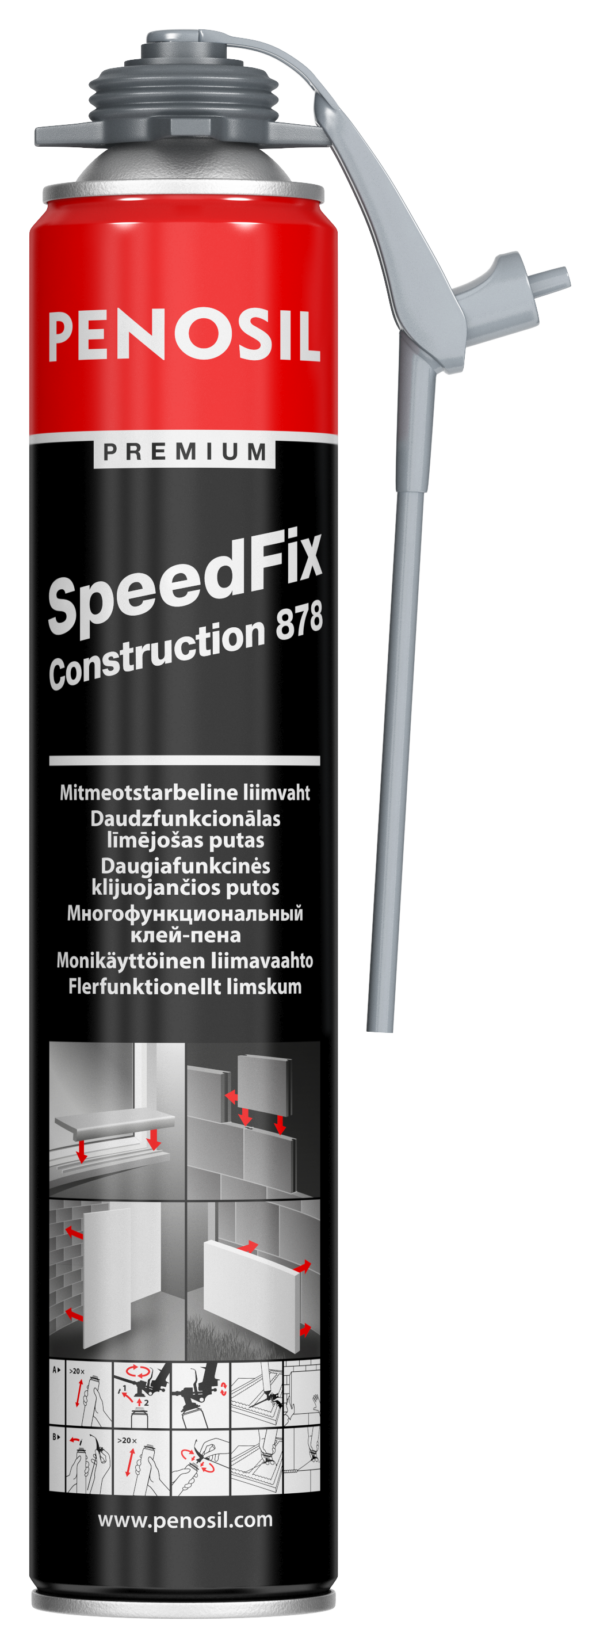 Penosil Premium SpeedFix Construction 878 univerzální pěnové lepidlo